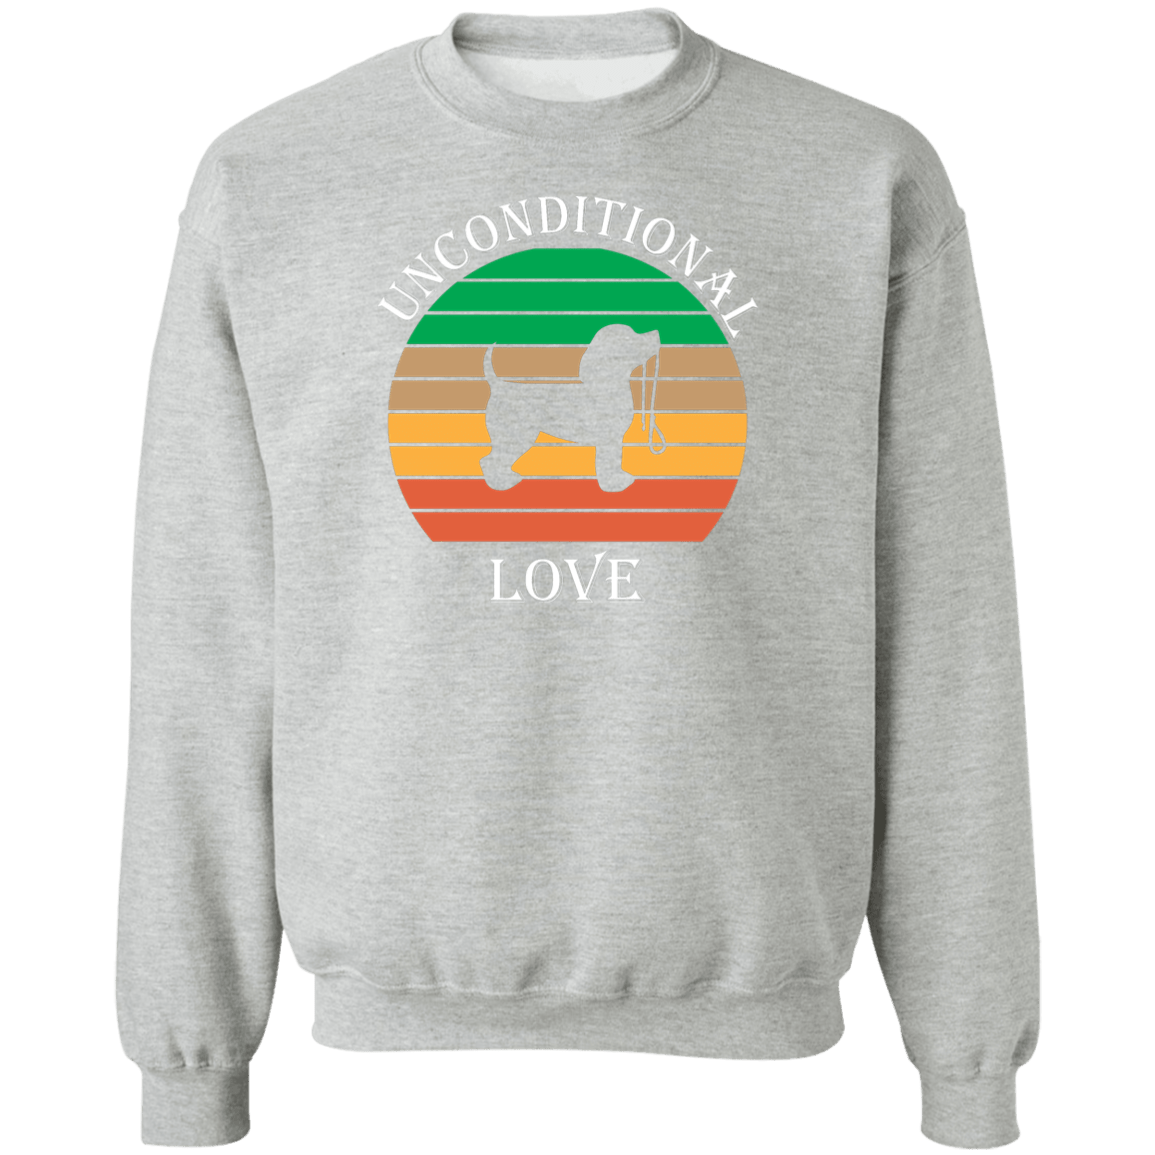 Unconditional Love - Sweatshirt.